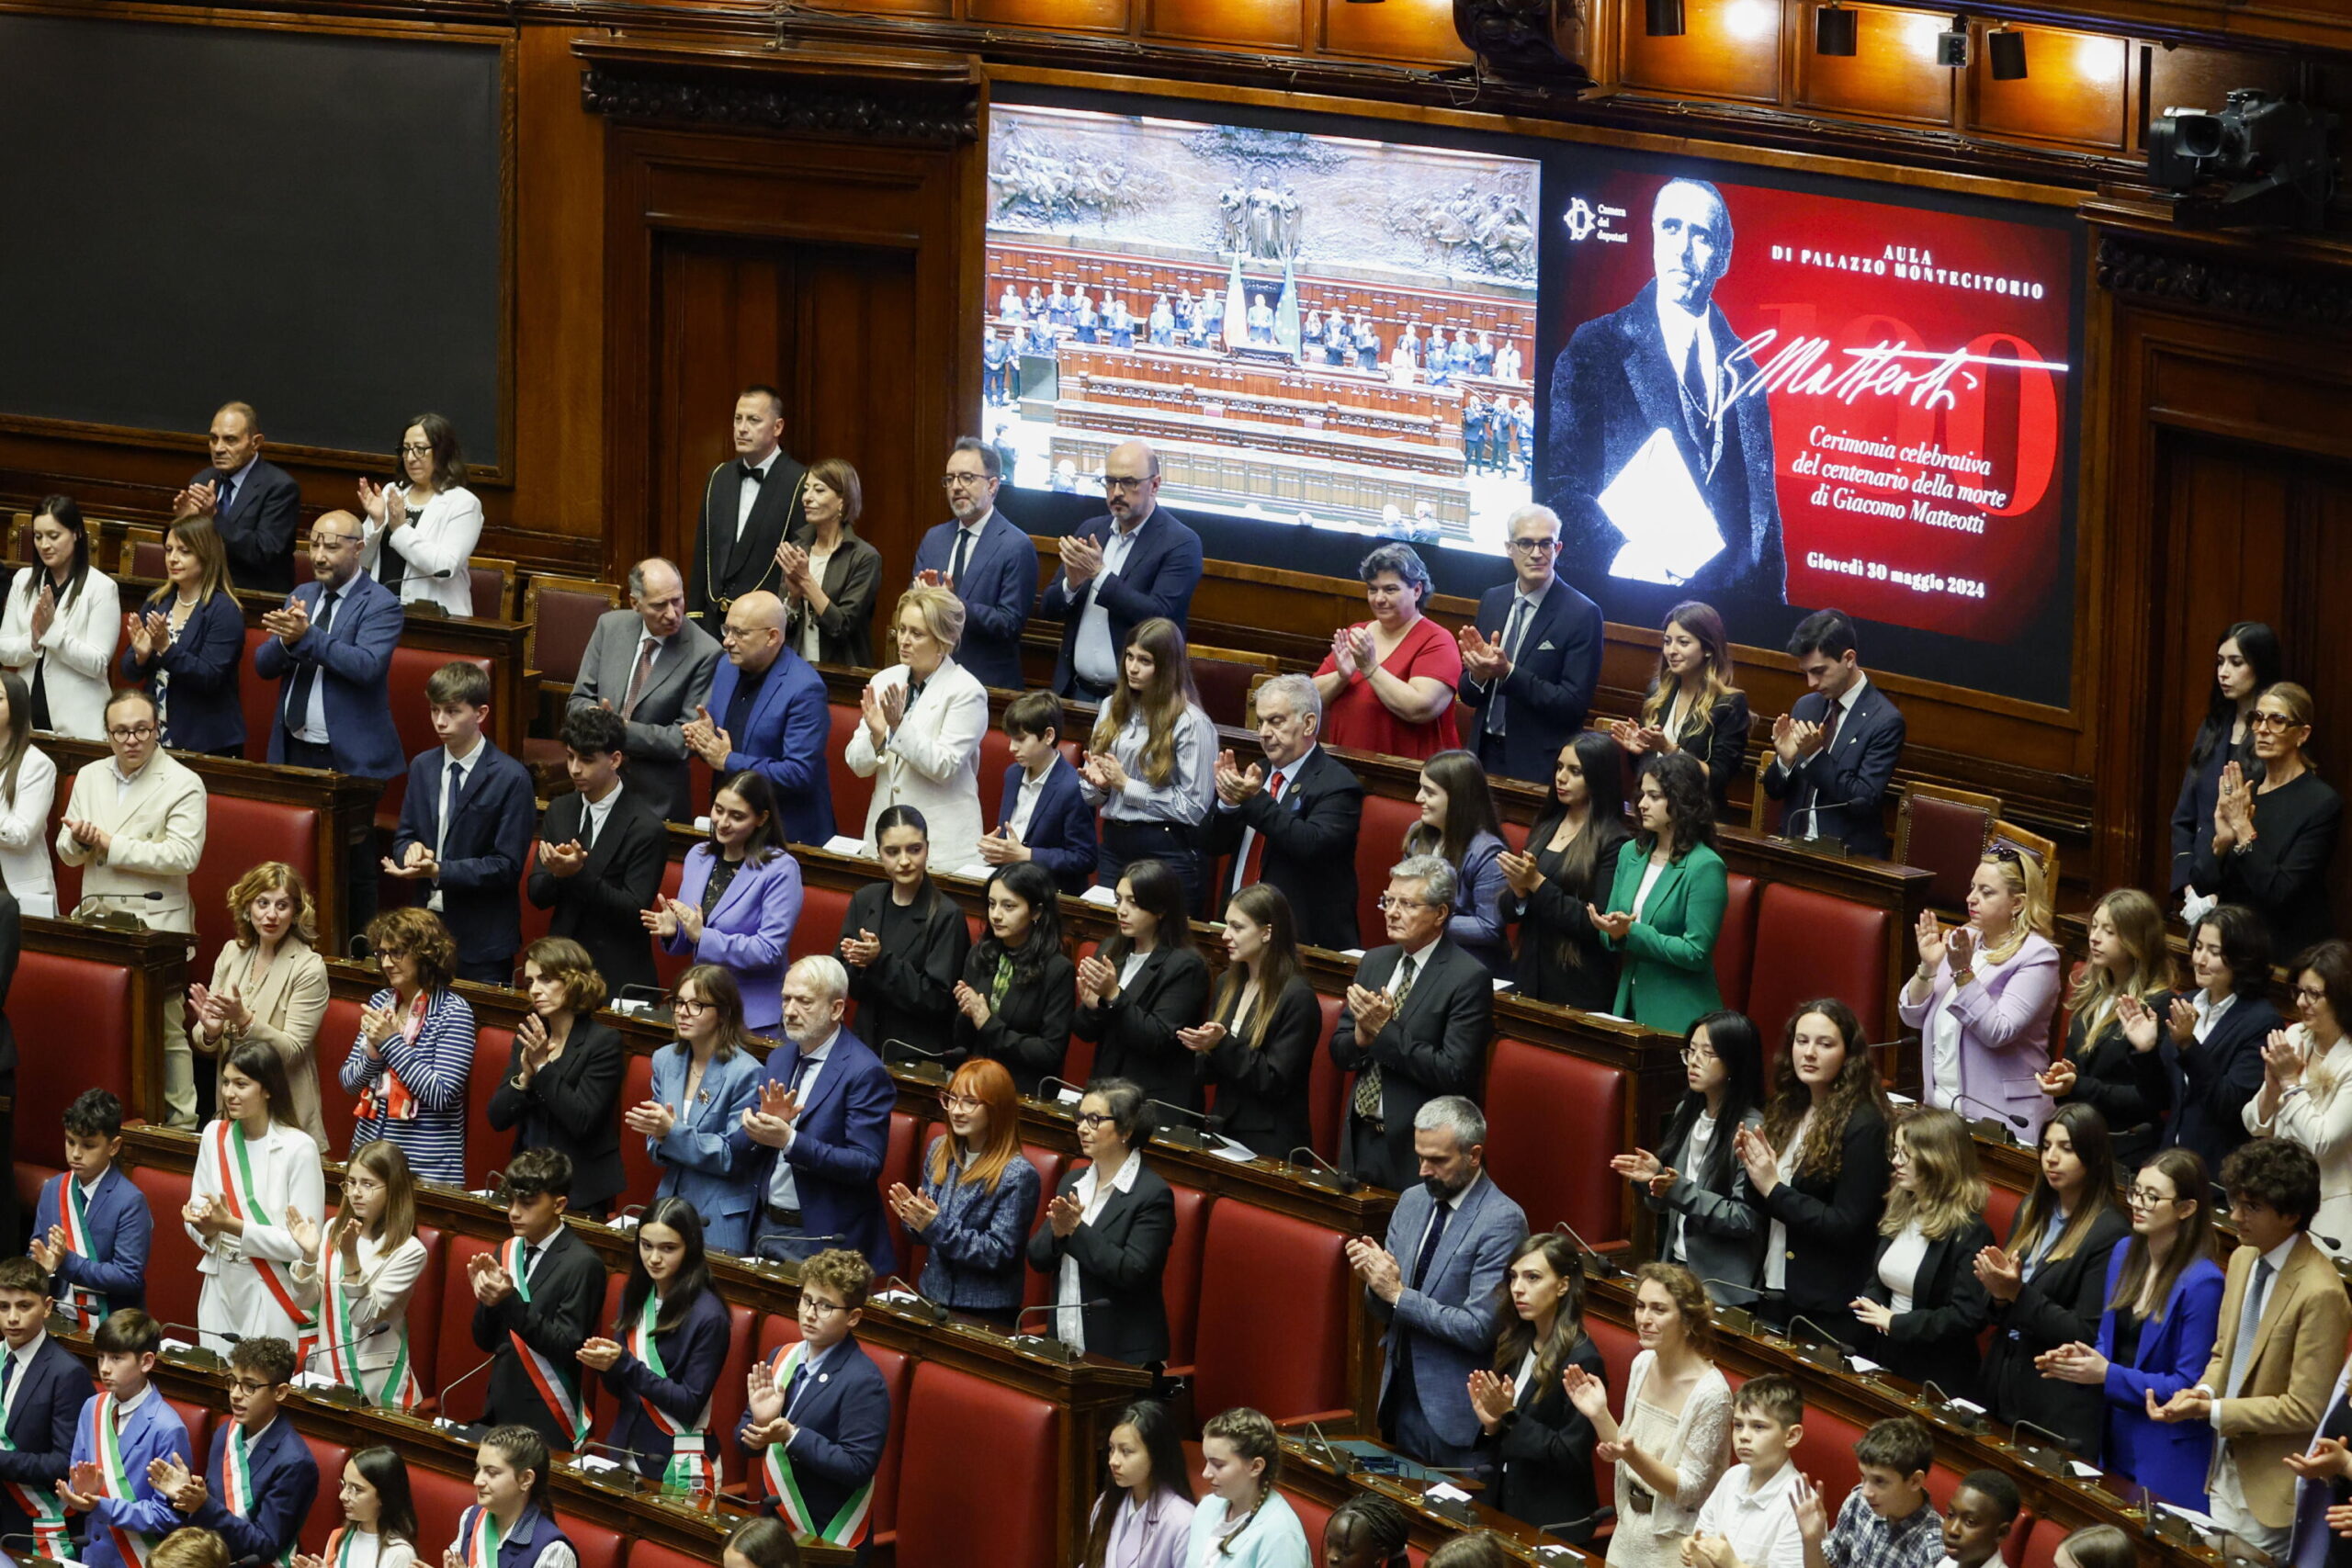 Cento anni fa l'ultimo discorso di Matteotti alla Camera, uno scranno porterà il suo nome: "Nessuno potrà occuparlo"